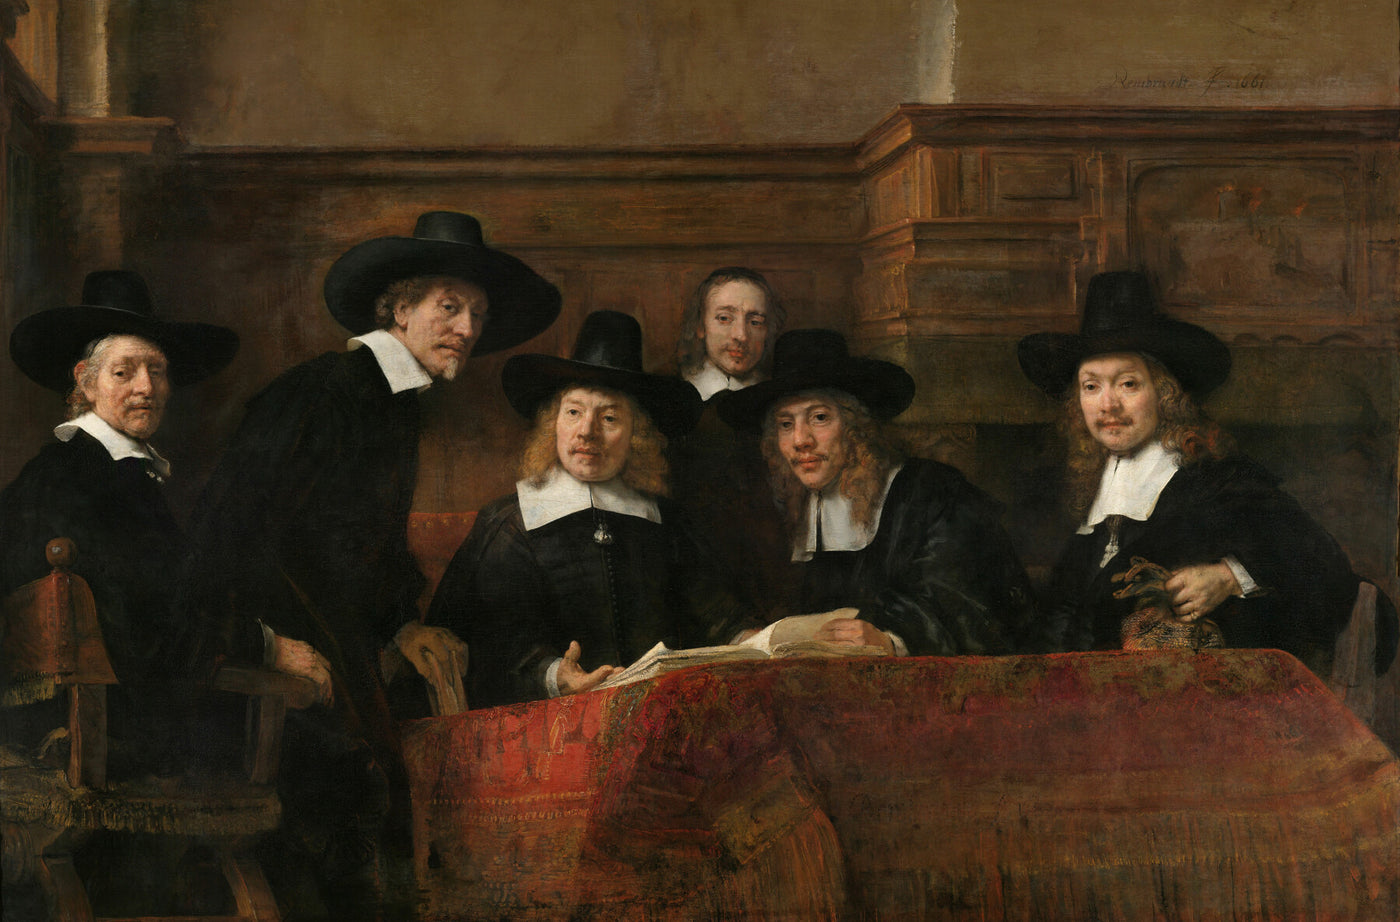 Die Gastwirte der Amsterdamer Tuchmacherzunft, bekannt als "Die Stahlmeister", Rembrandt van Rijn, 1662